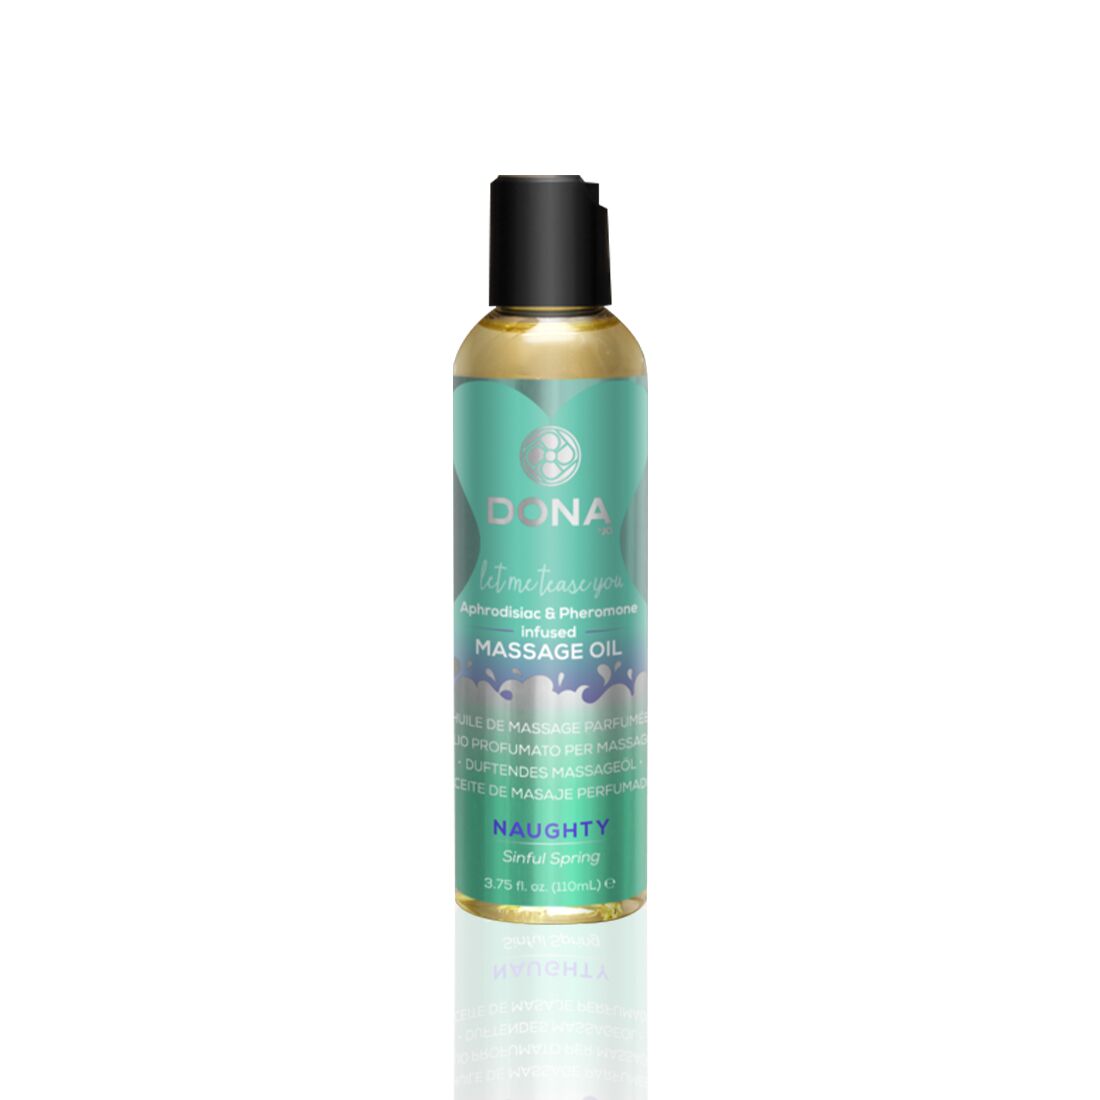 Массажное масло DONA Massage Oil NAUGHTY - SINFUL SPRING (110 мл) с феромонами и аф�родизиаками